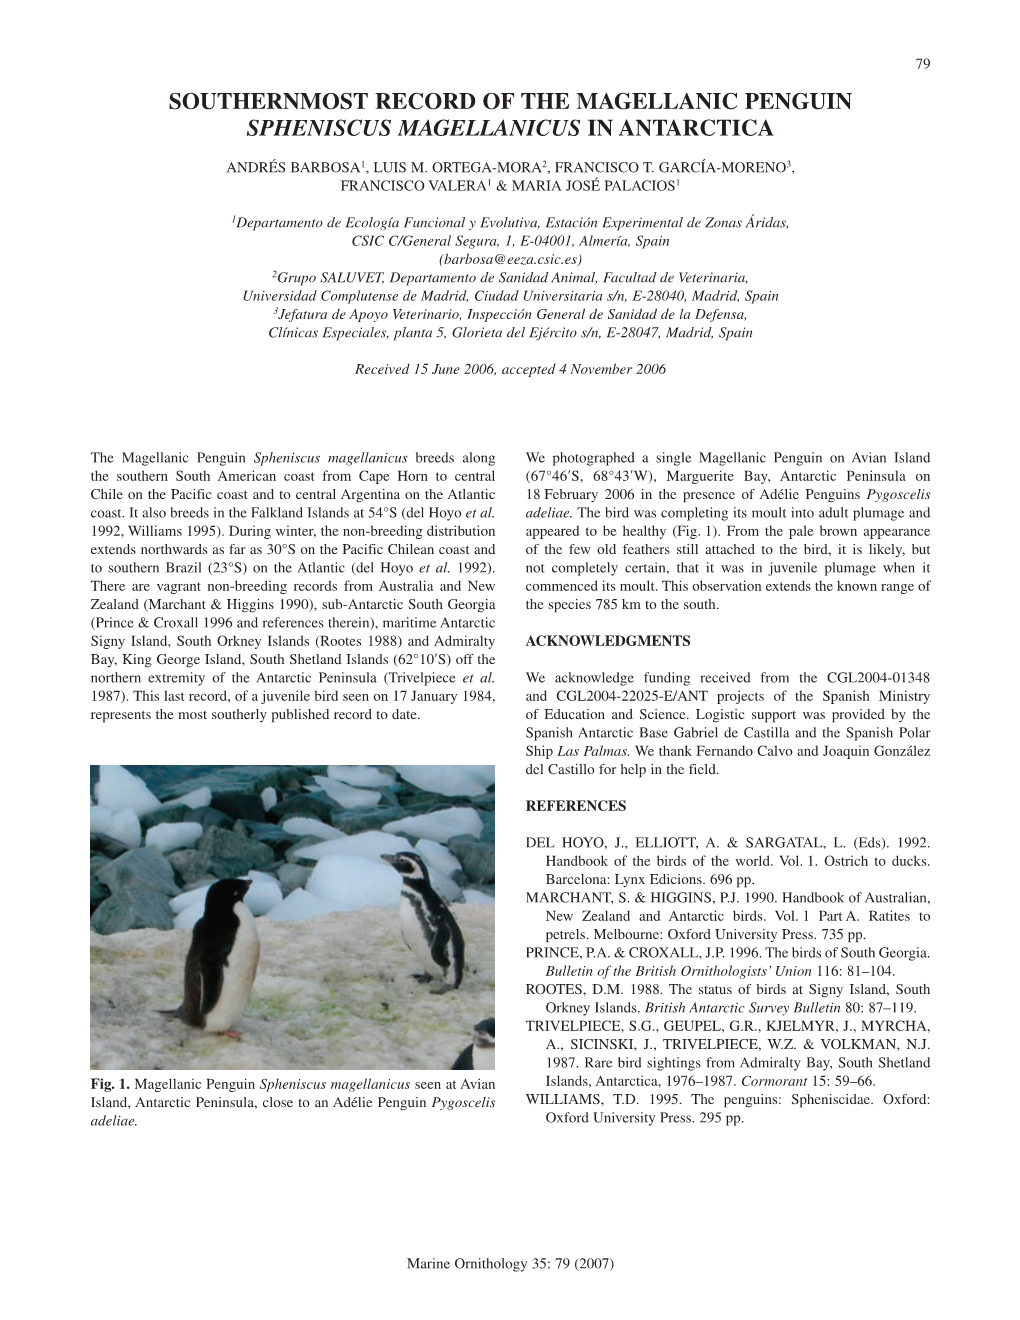 Southernmost Record of the Magellanic Penguin Spheniscus Magellanicus in Antarctica